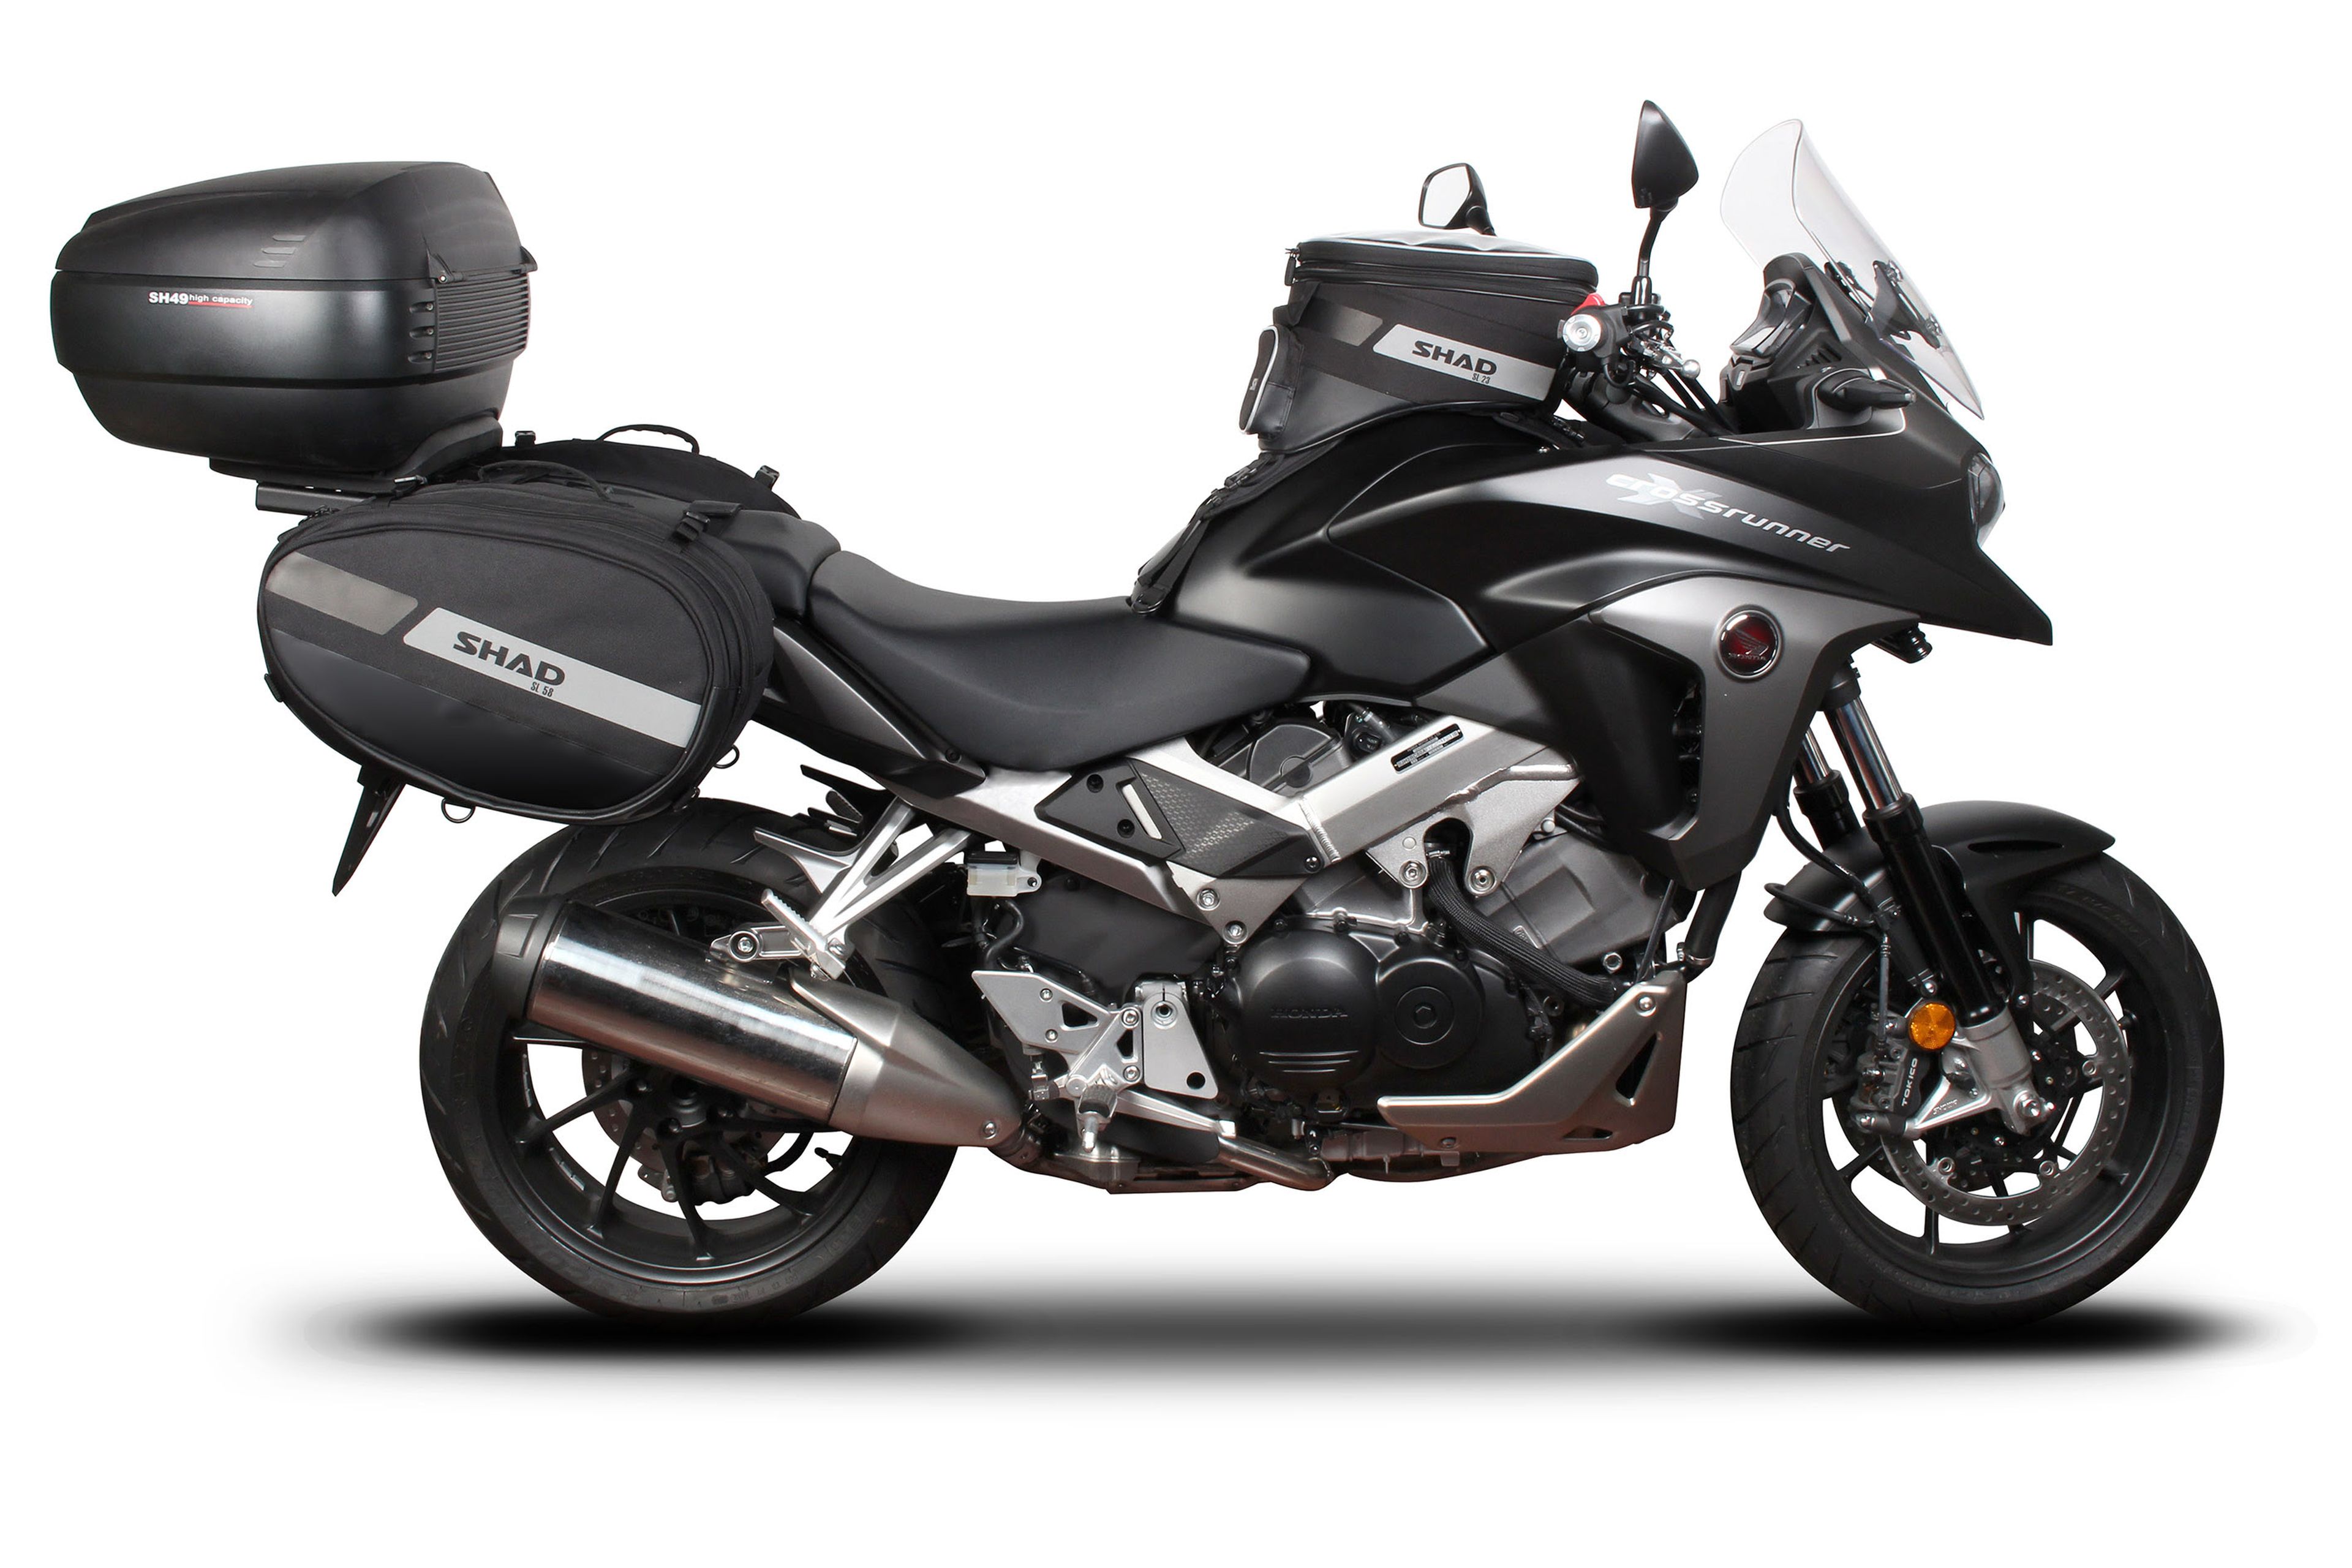 Shad presenta novedades en equipamiento para la moto